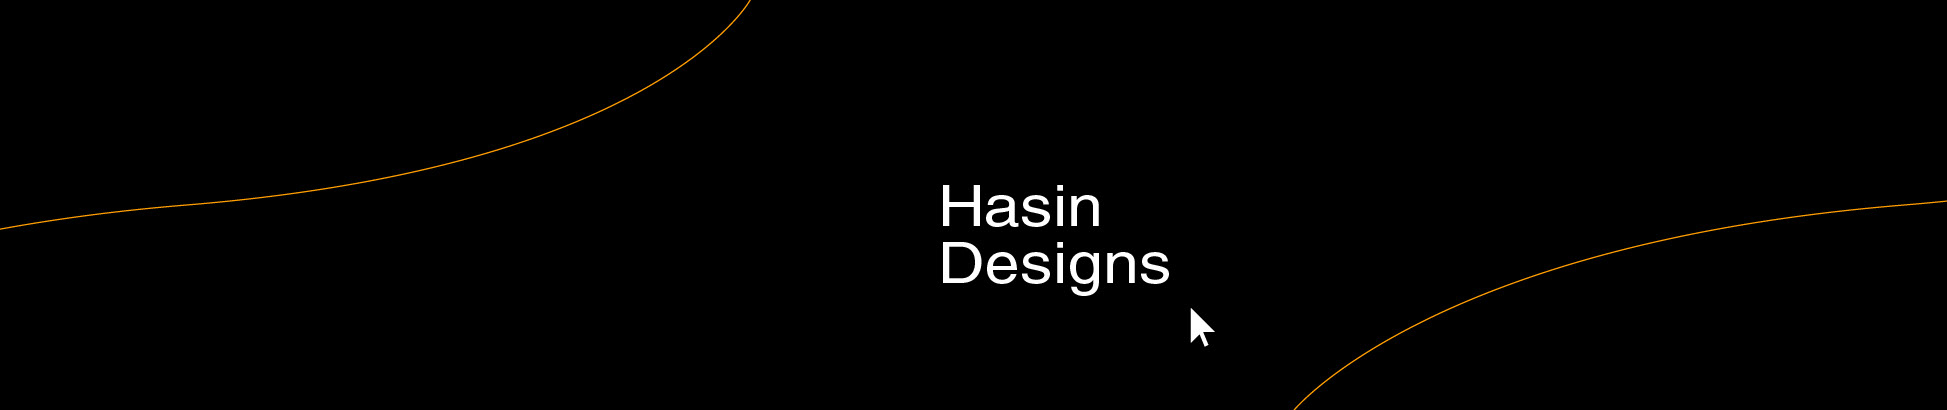 Hasin Designs's profile banner